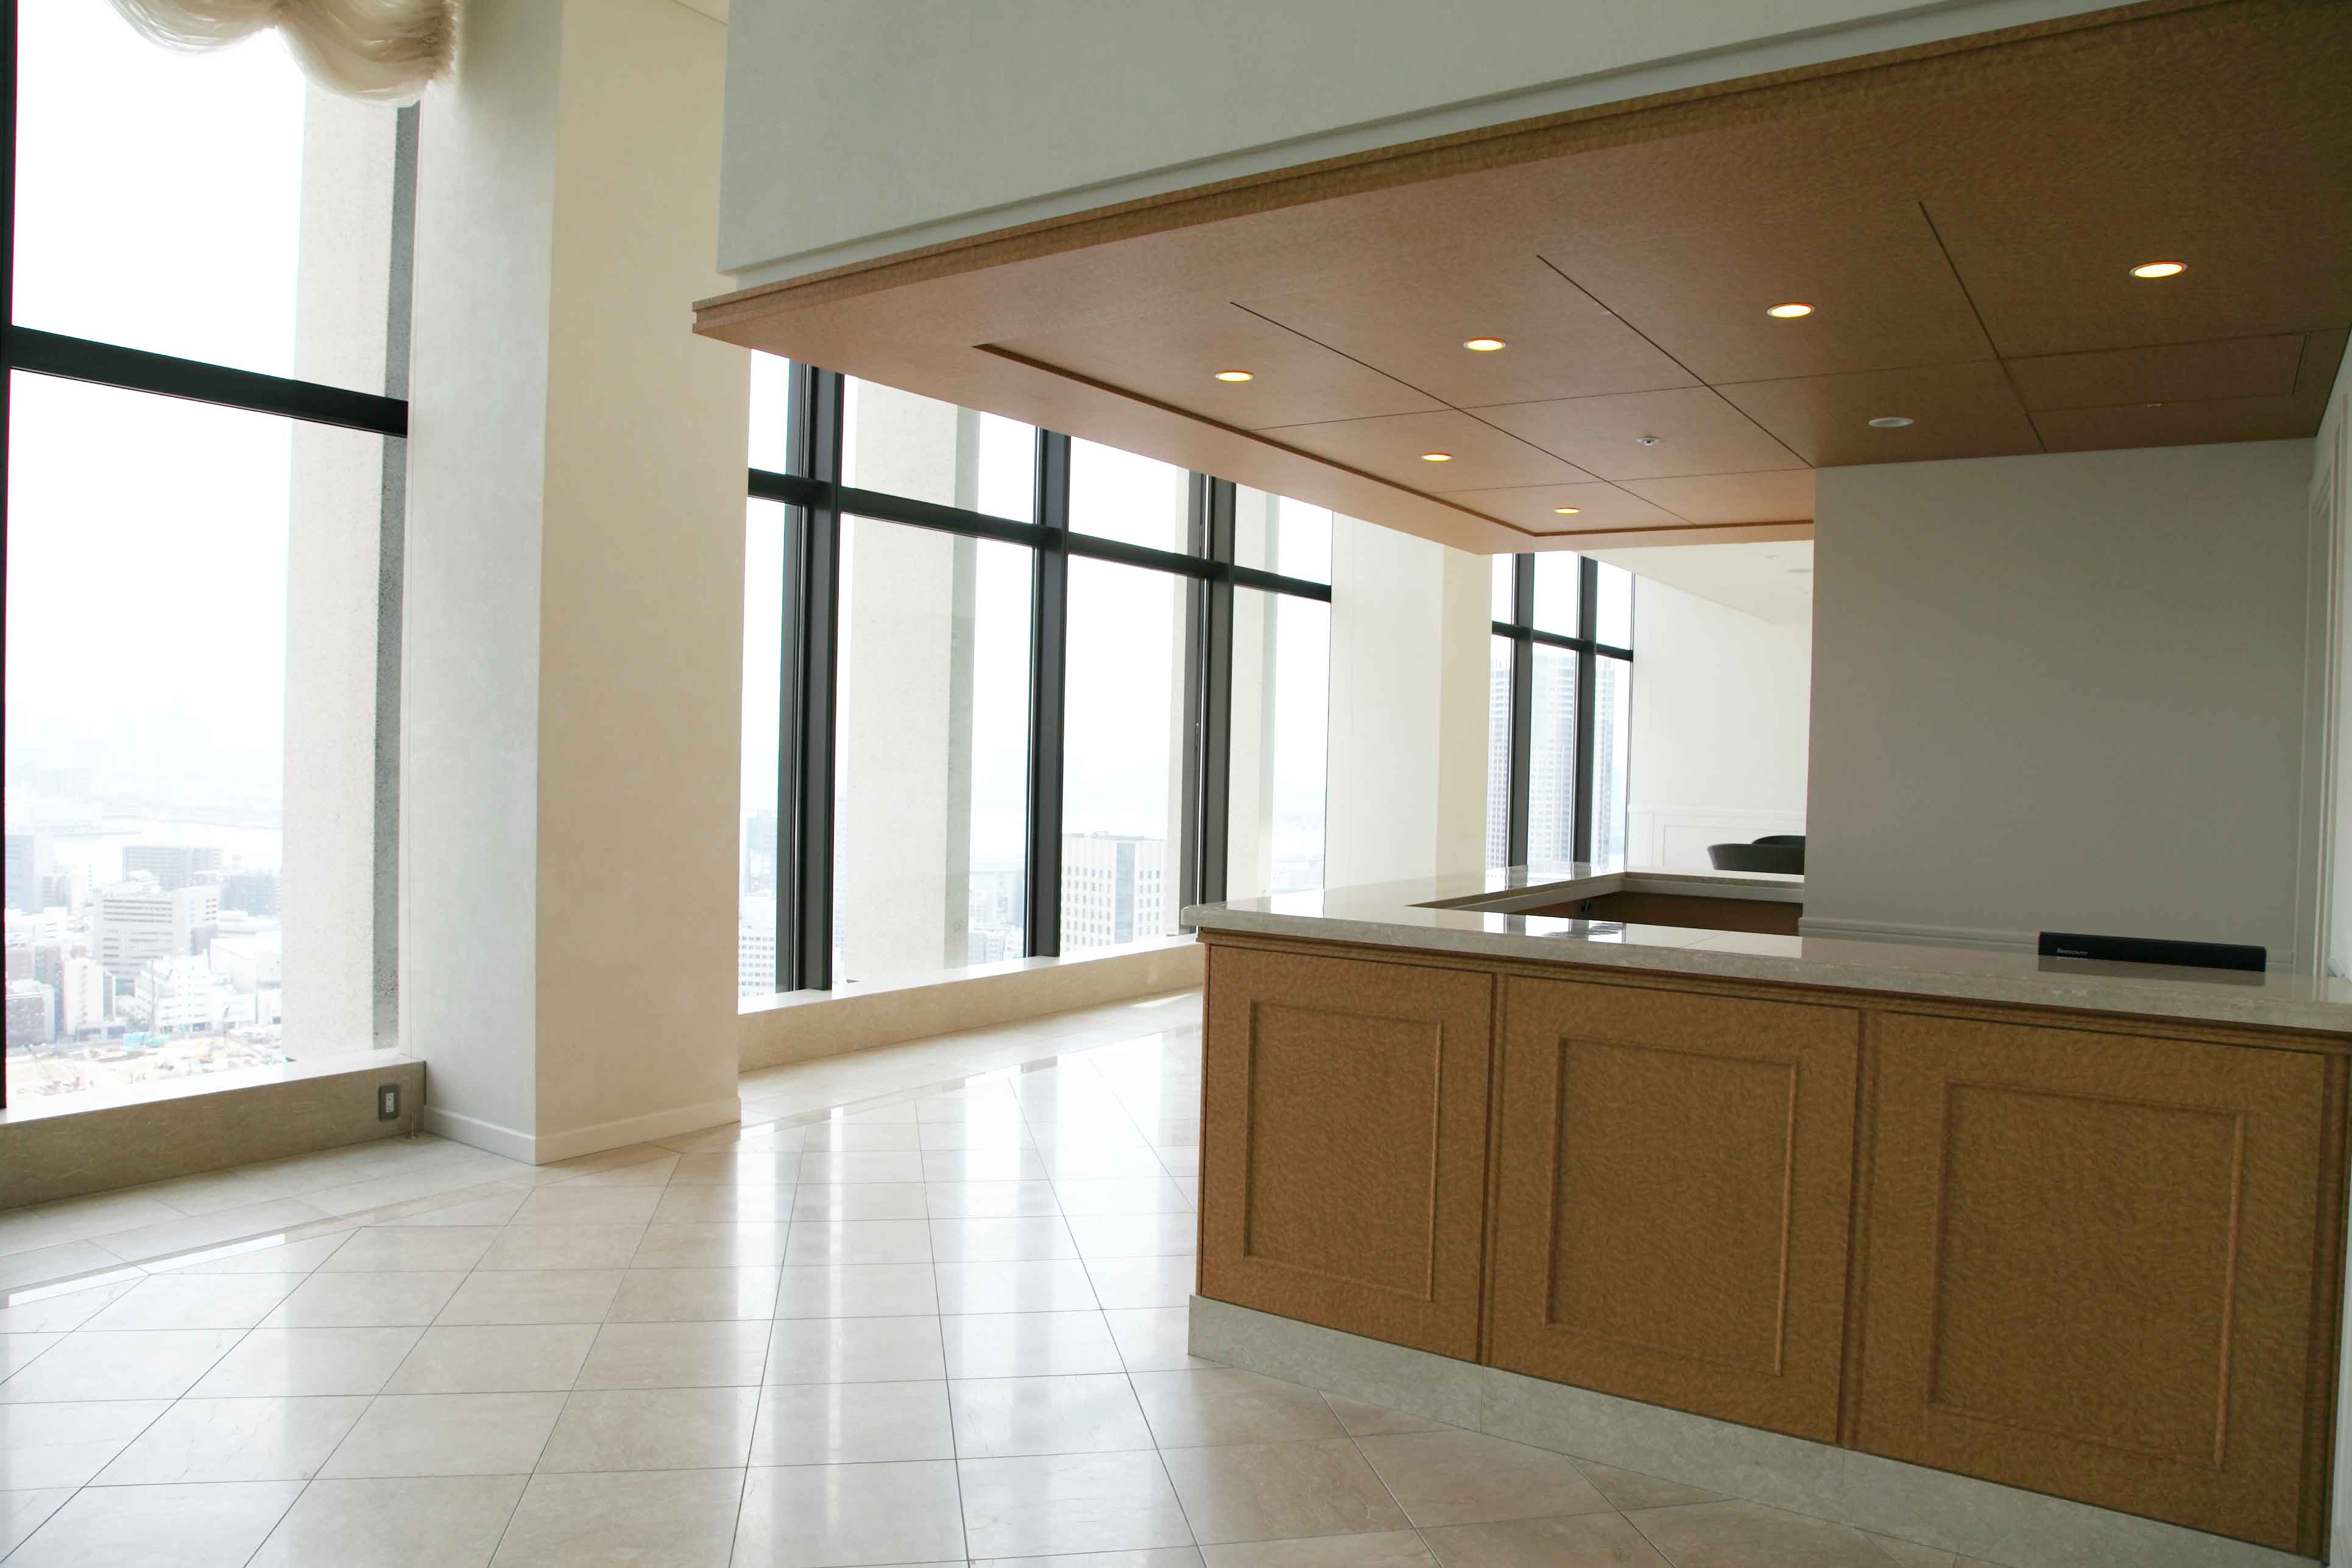 lobby. 25th floor concierge counter